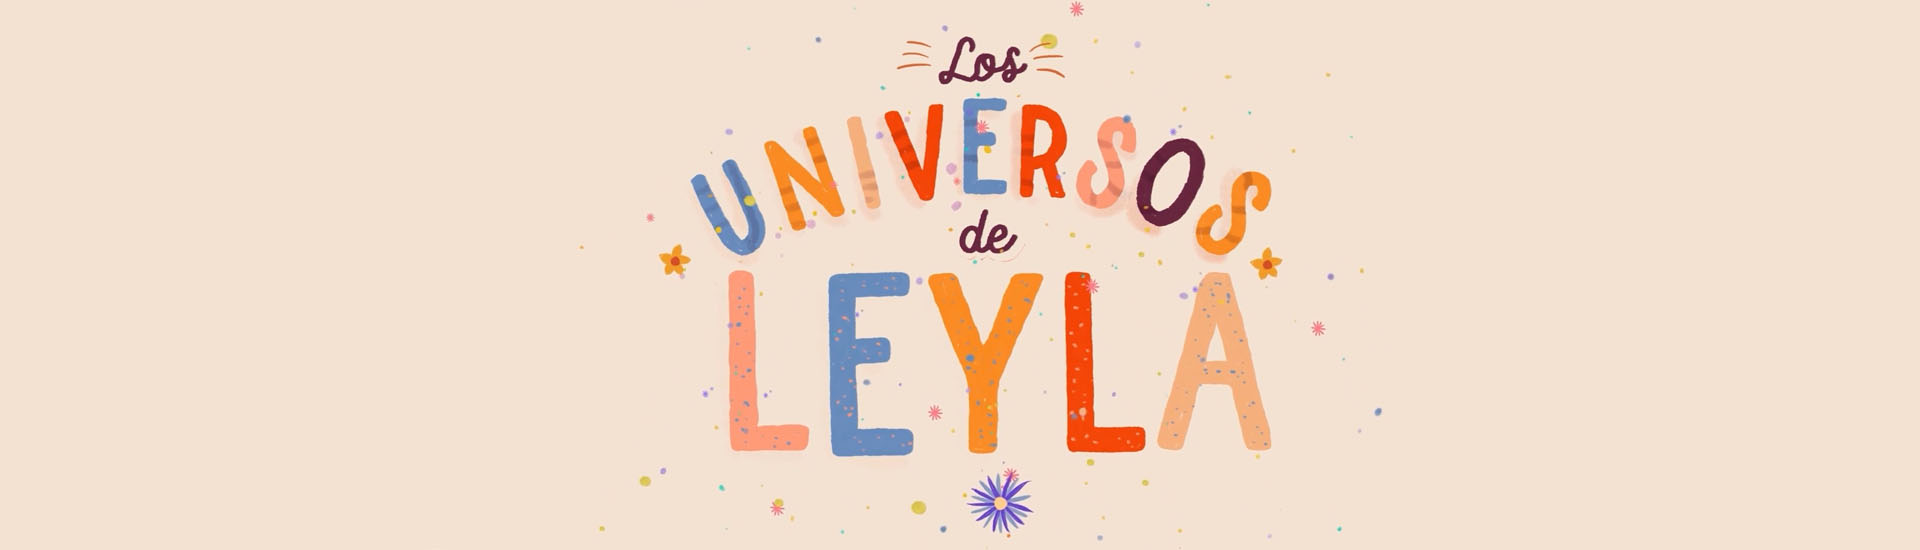 The Universes of Leyla (Spanish)